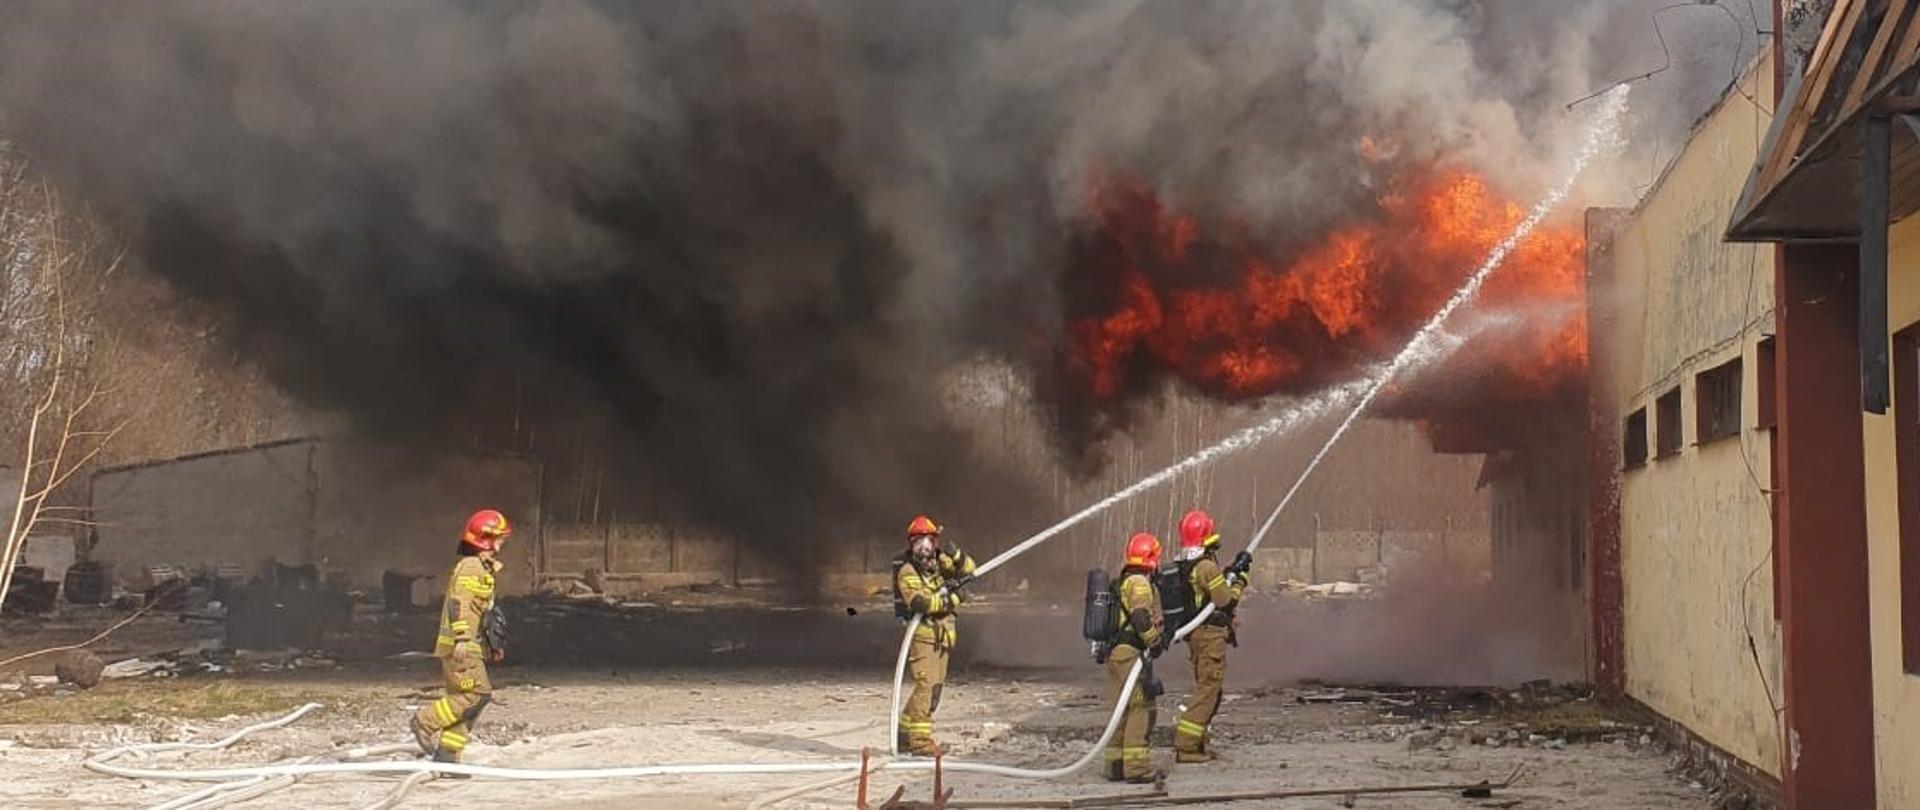 Strażacy gaszą pożar pustostanu hali magazynu.